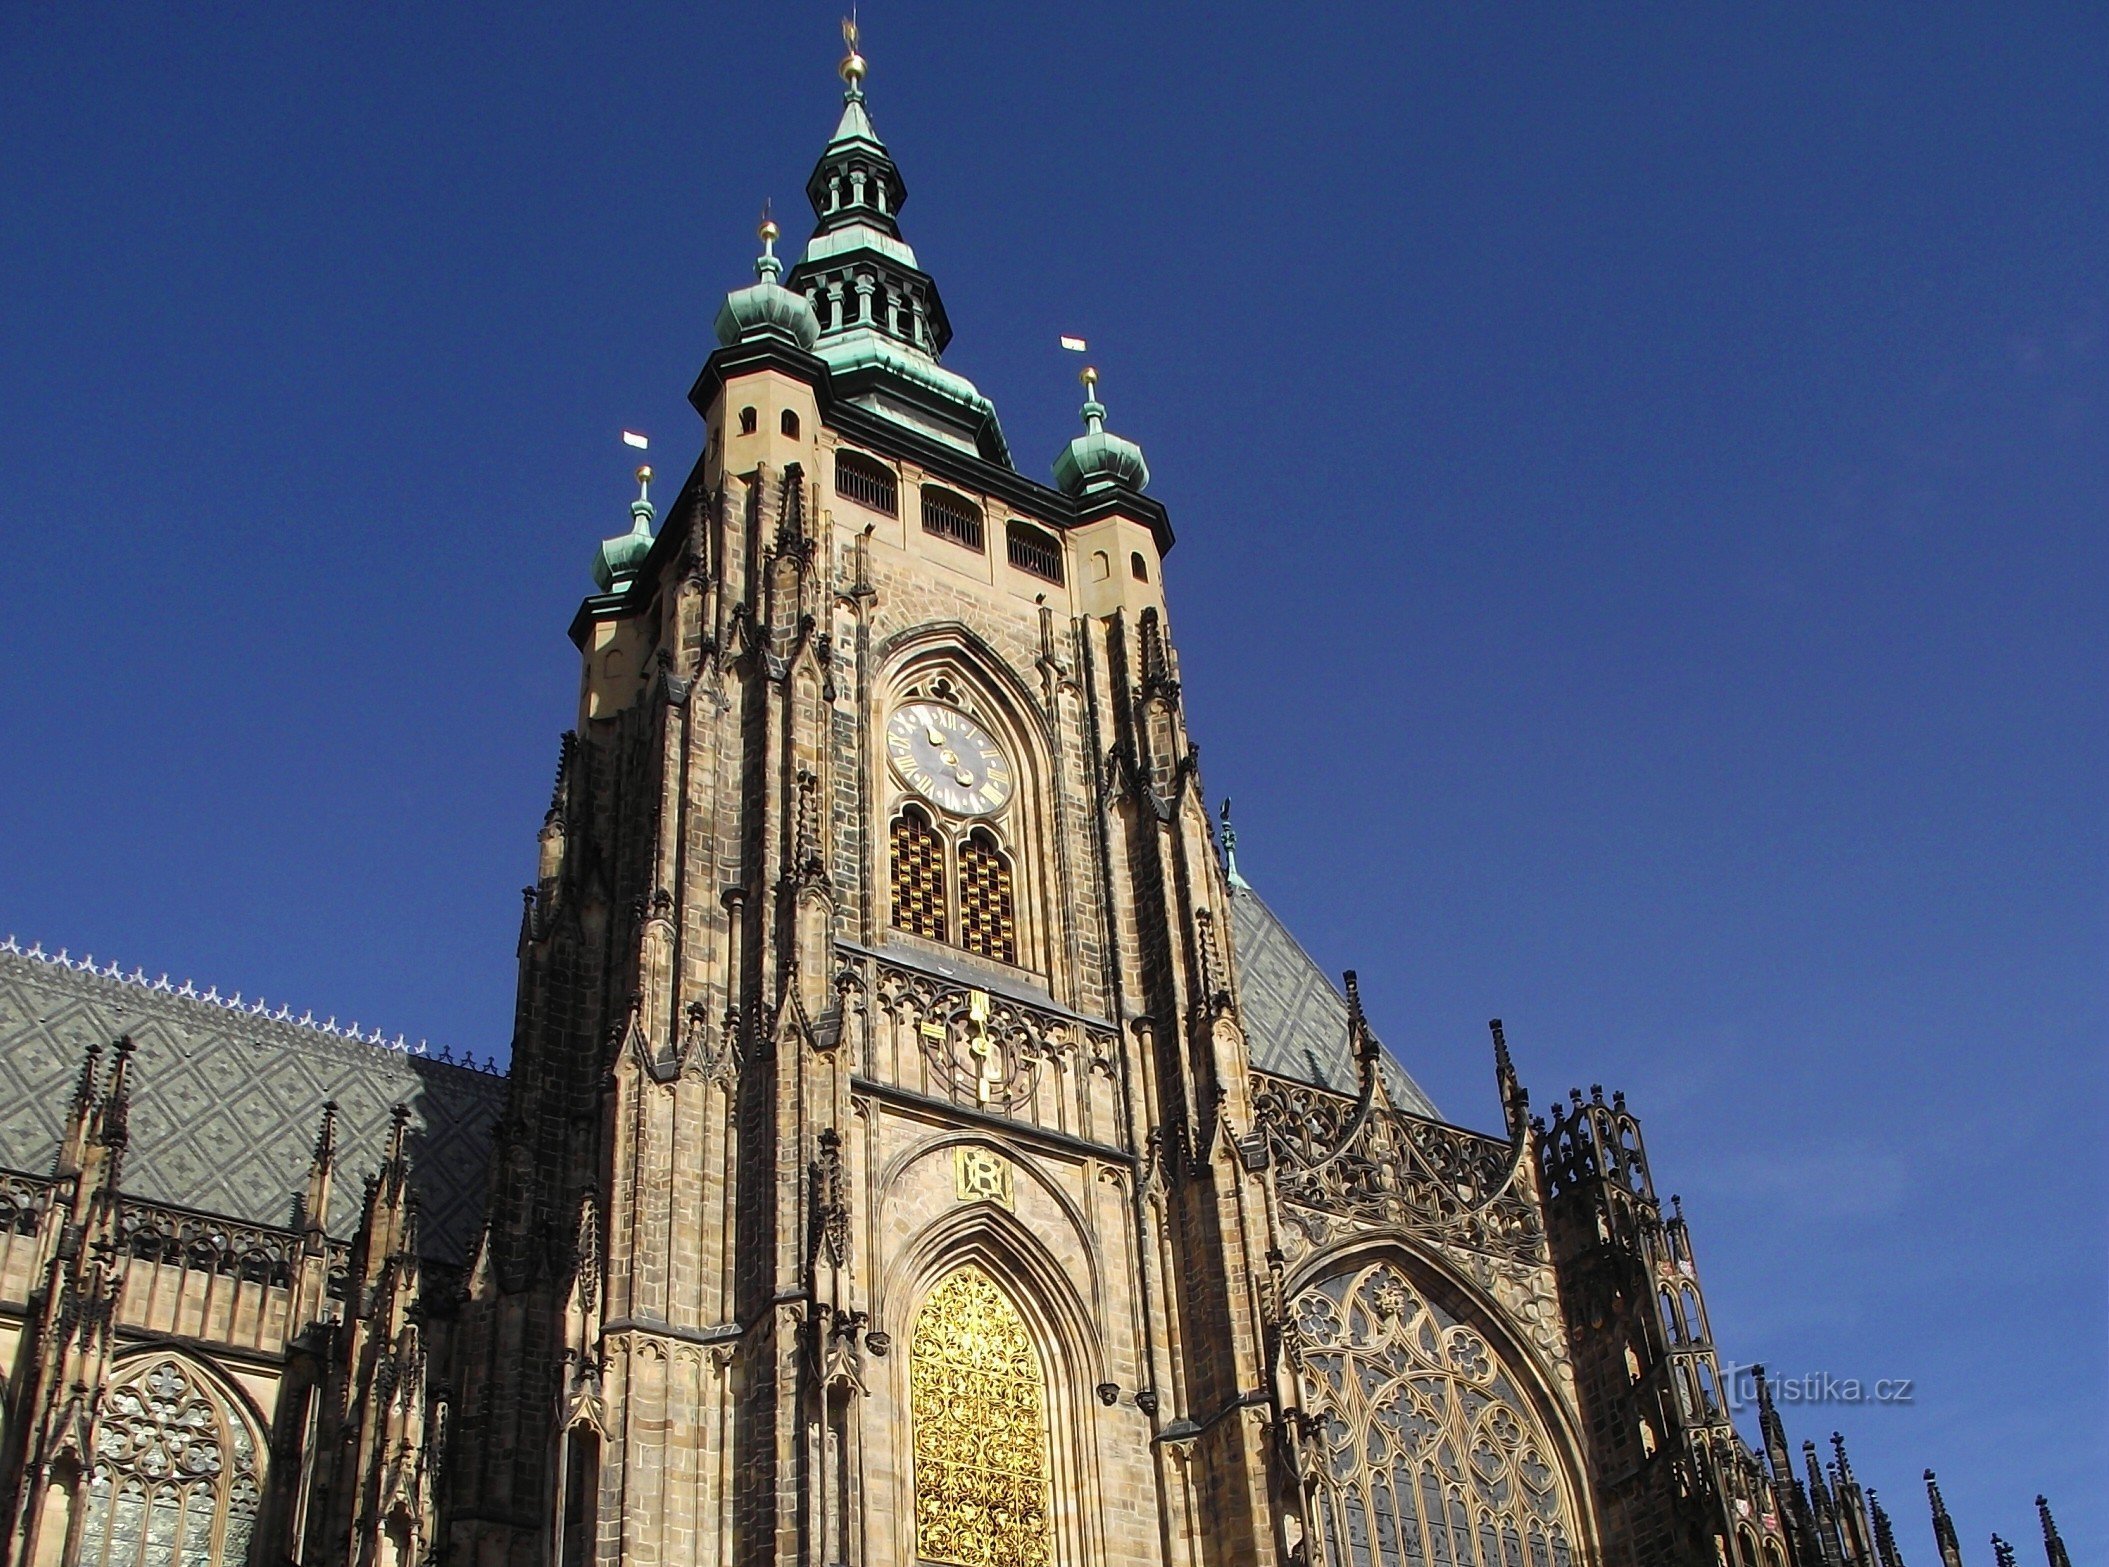 Praga - dzwonnica katedralna Wielka Wieża Południowa (Zamek Praski)